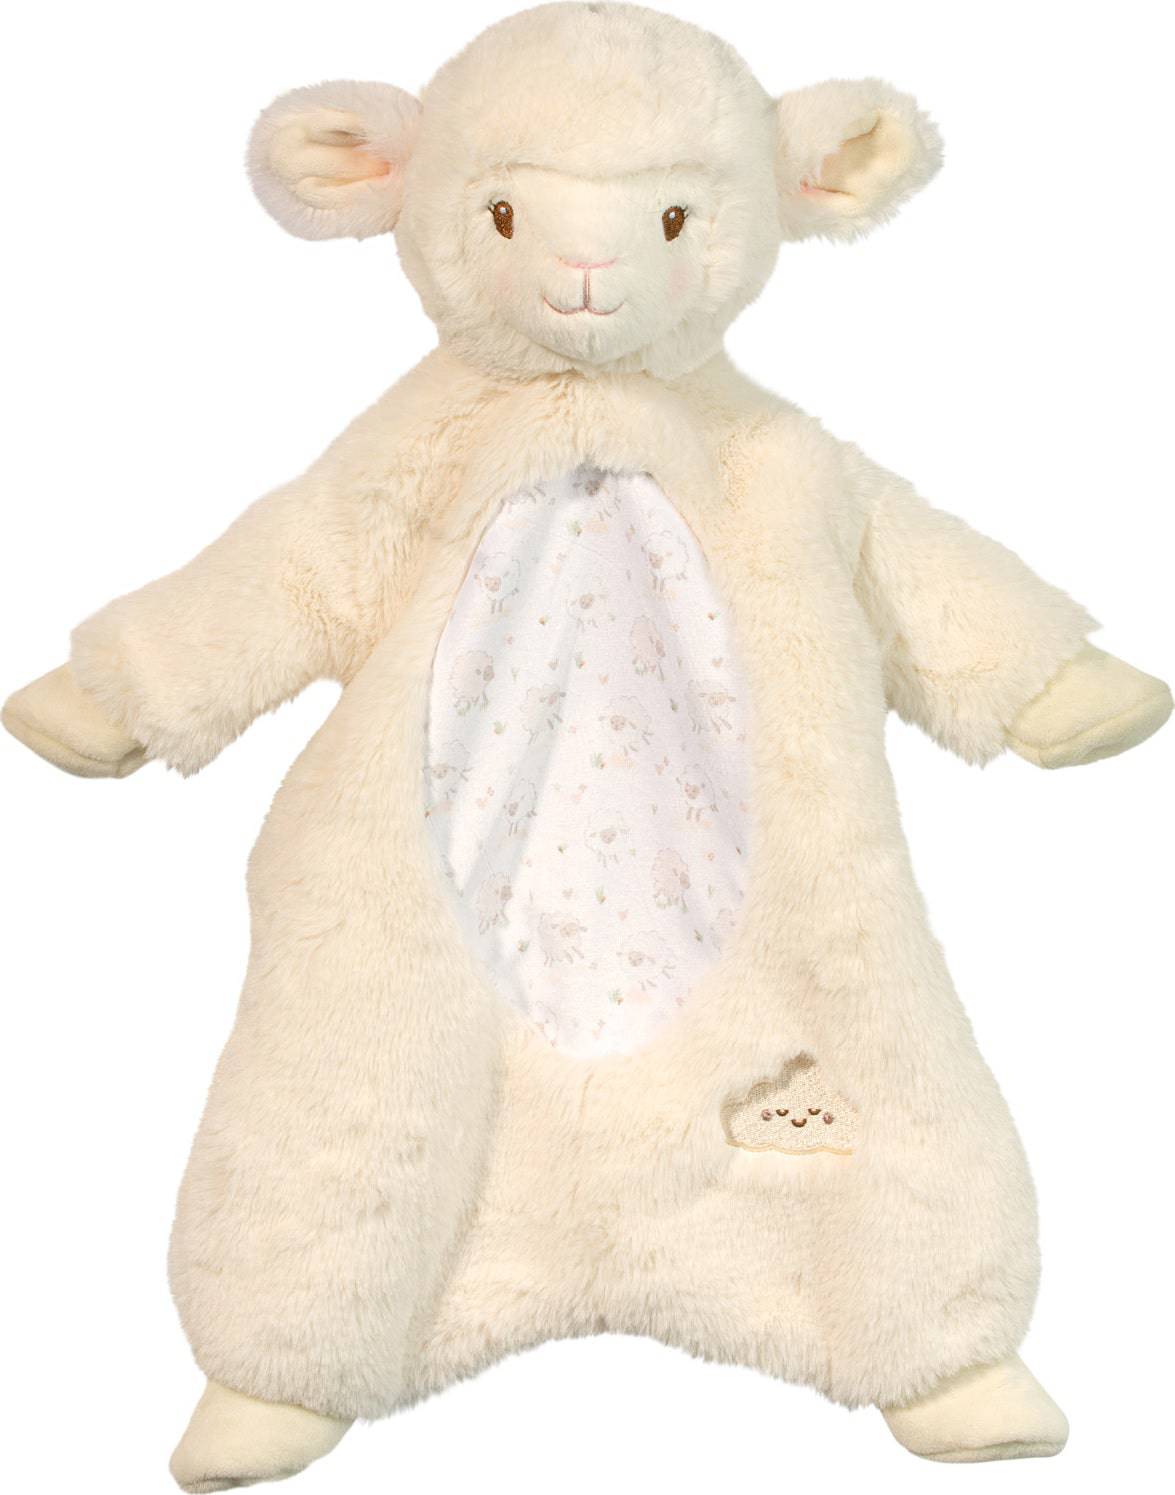 Lamb Sshlumpie - A Child's Delight